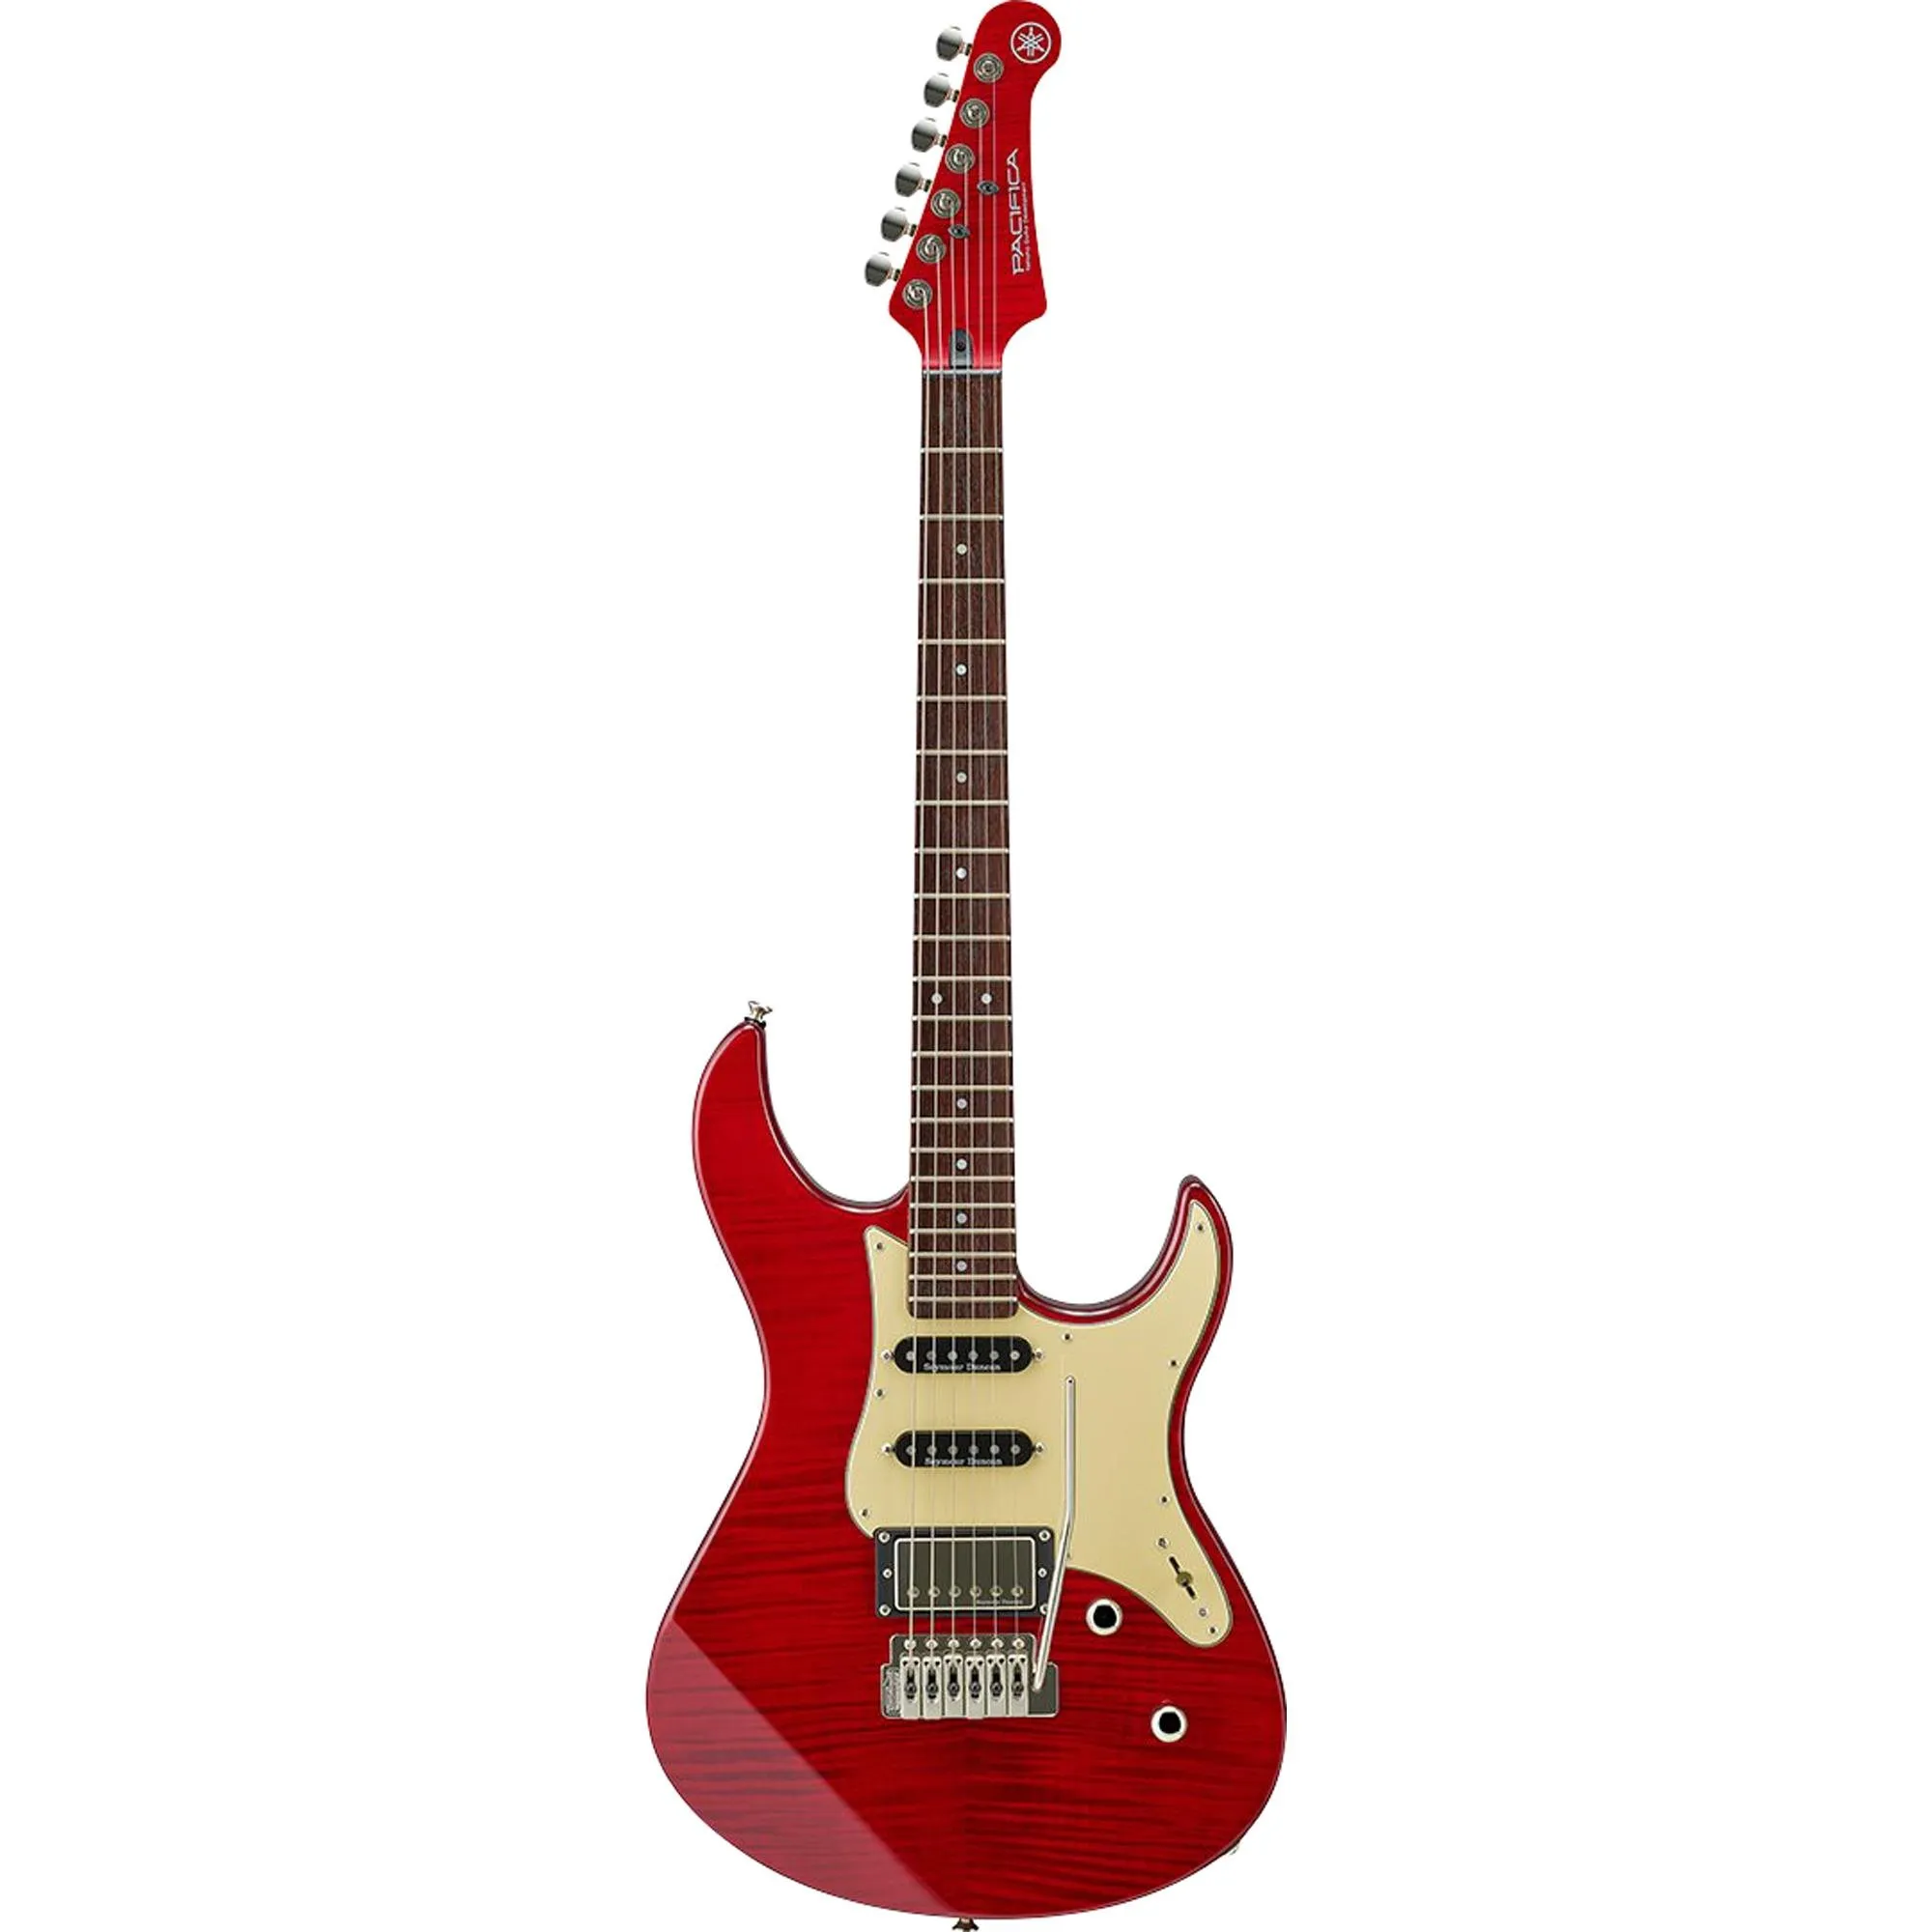 Guitarra Yamaha Pacífica PAC 612 VIIFMX Fired Red por 5.804,99 à vista no boleto/pix ou parcele em até 12x sem juros. Compre na loja Mundomax!